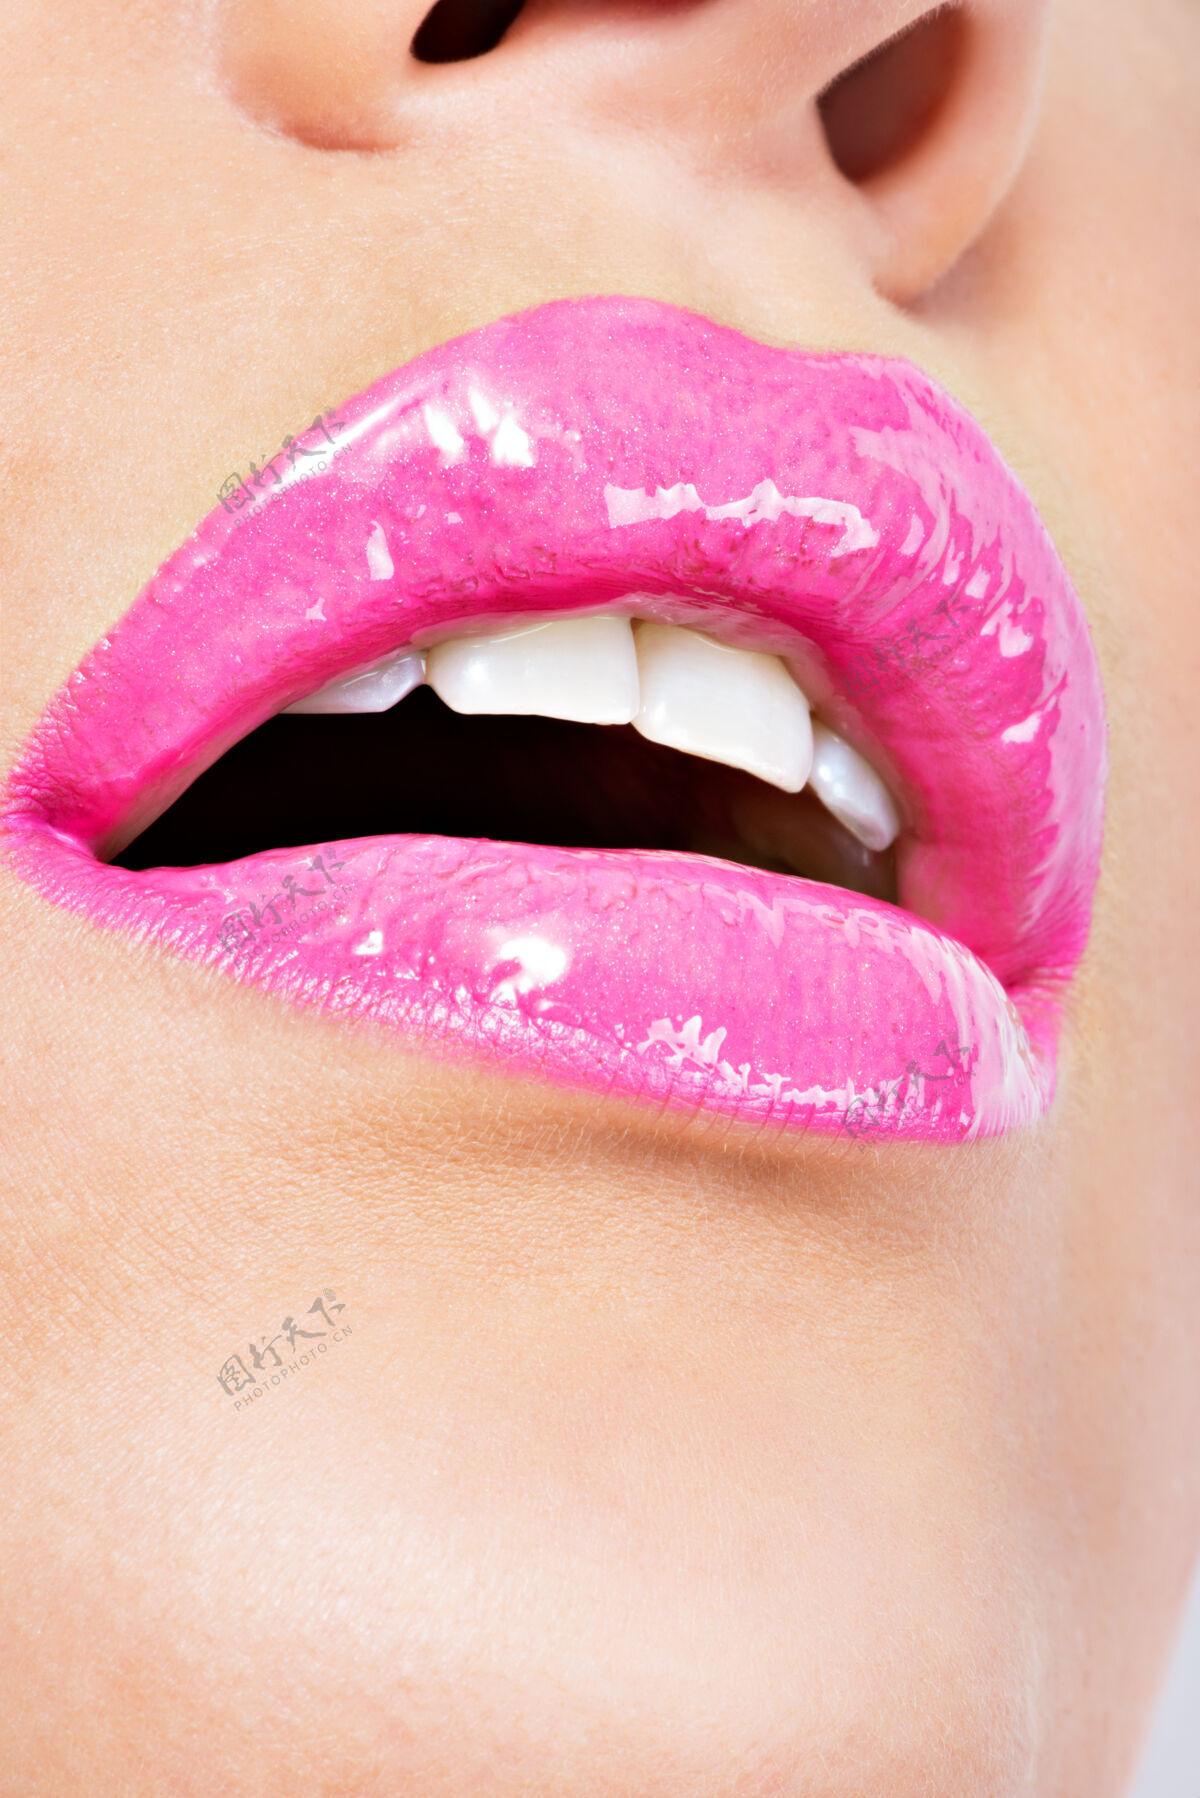 化妆品用粉红唇膏贴近美丽的女性嘴唇魅力时尚亮泽妆容开放光泽性感